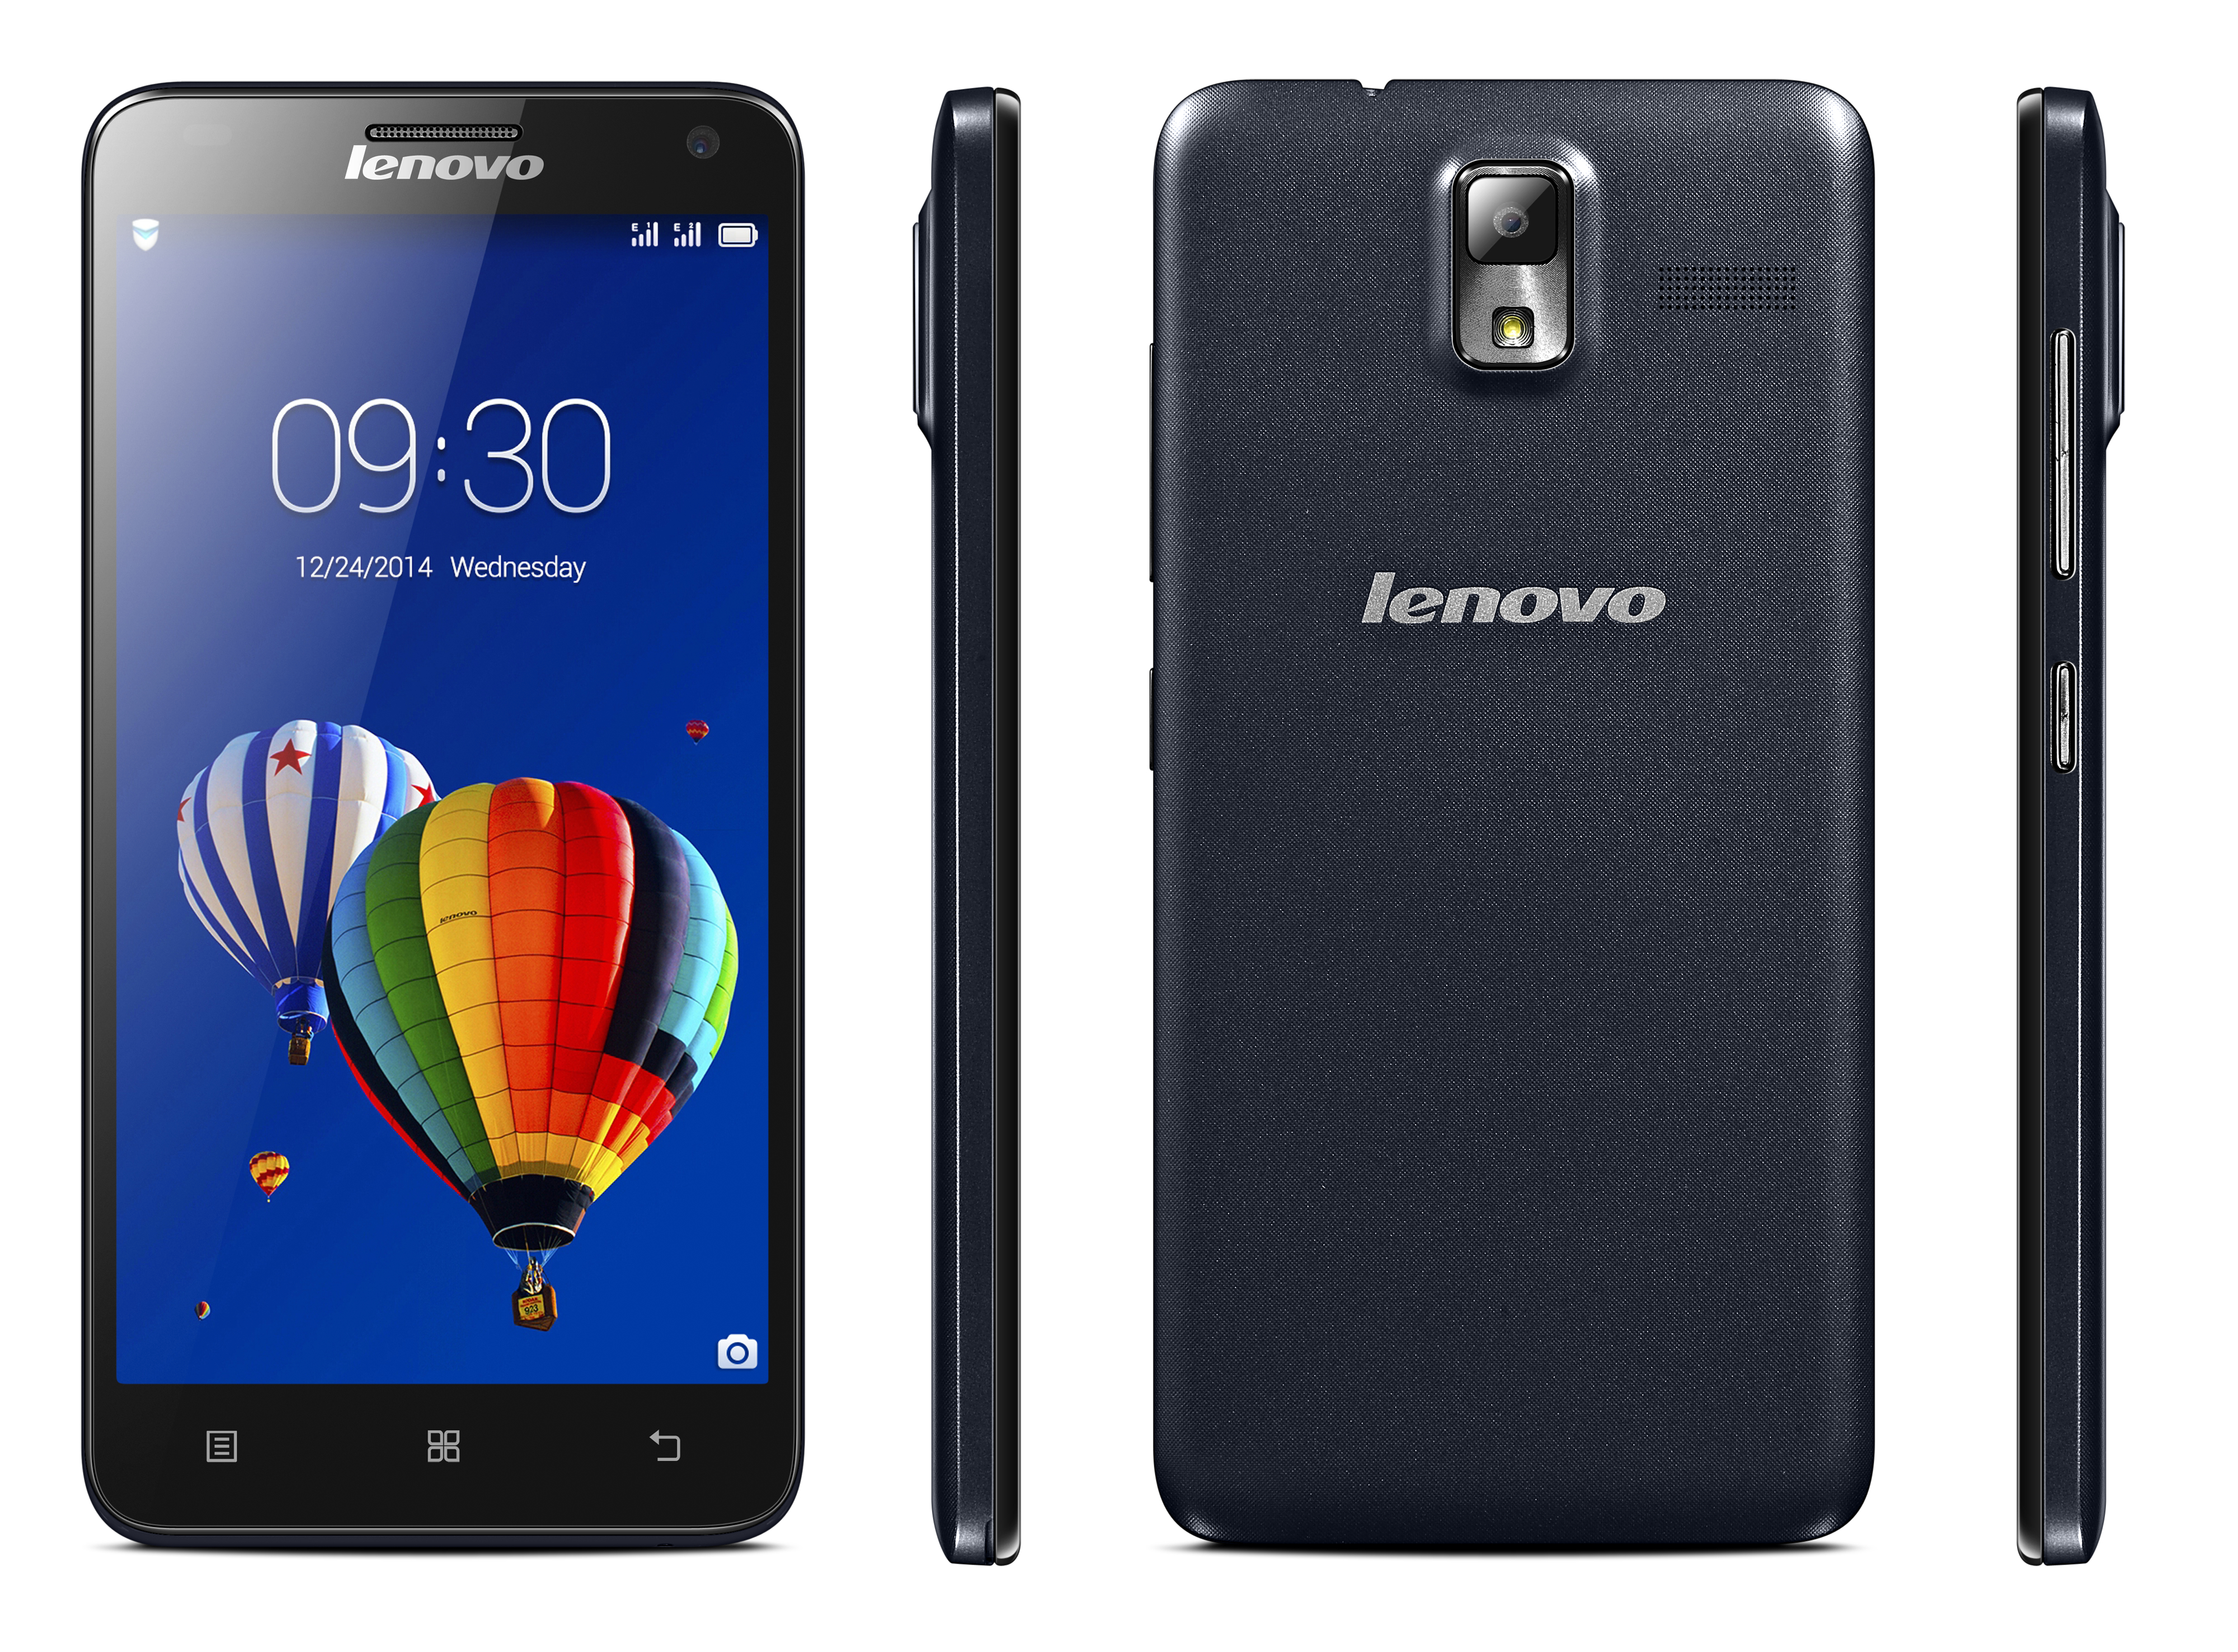 Mobilní telefon Lenovo S580 Black